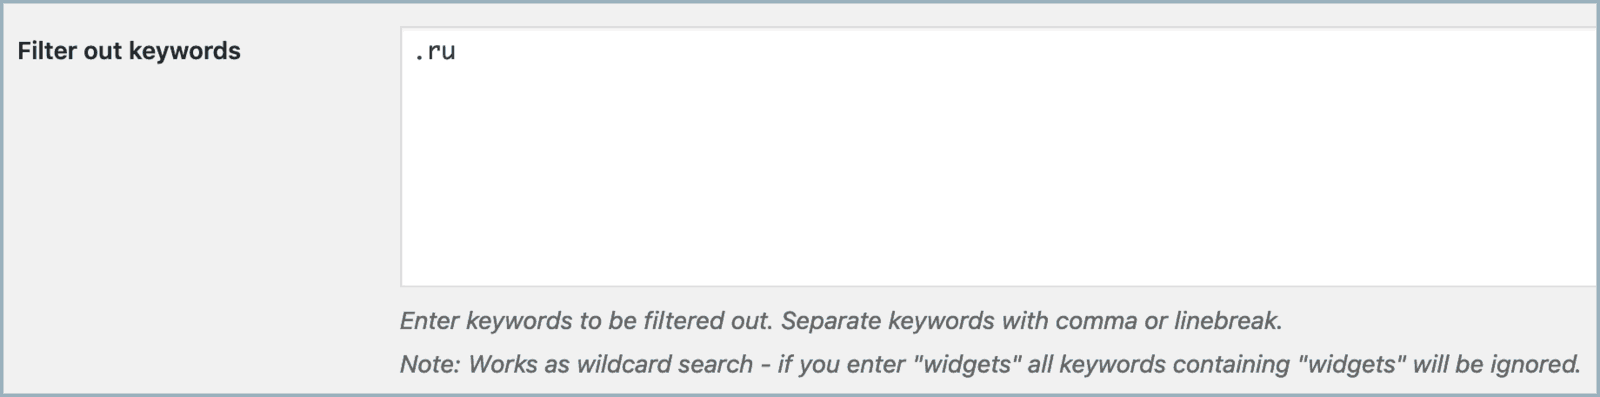 filter keywords